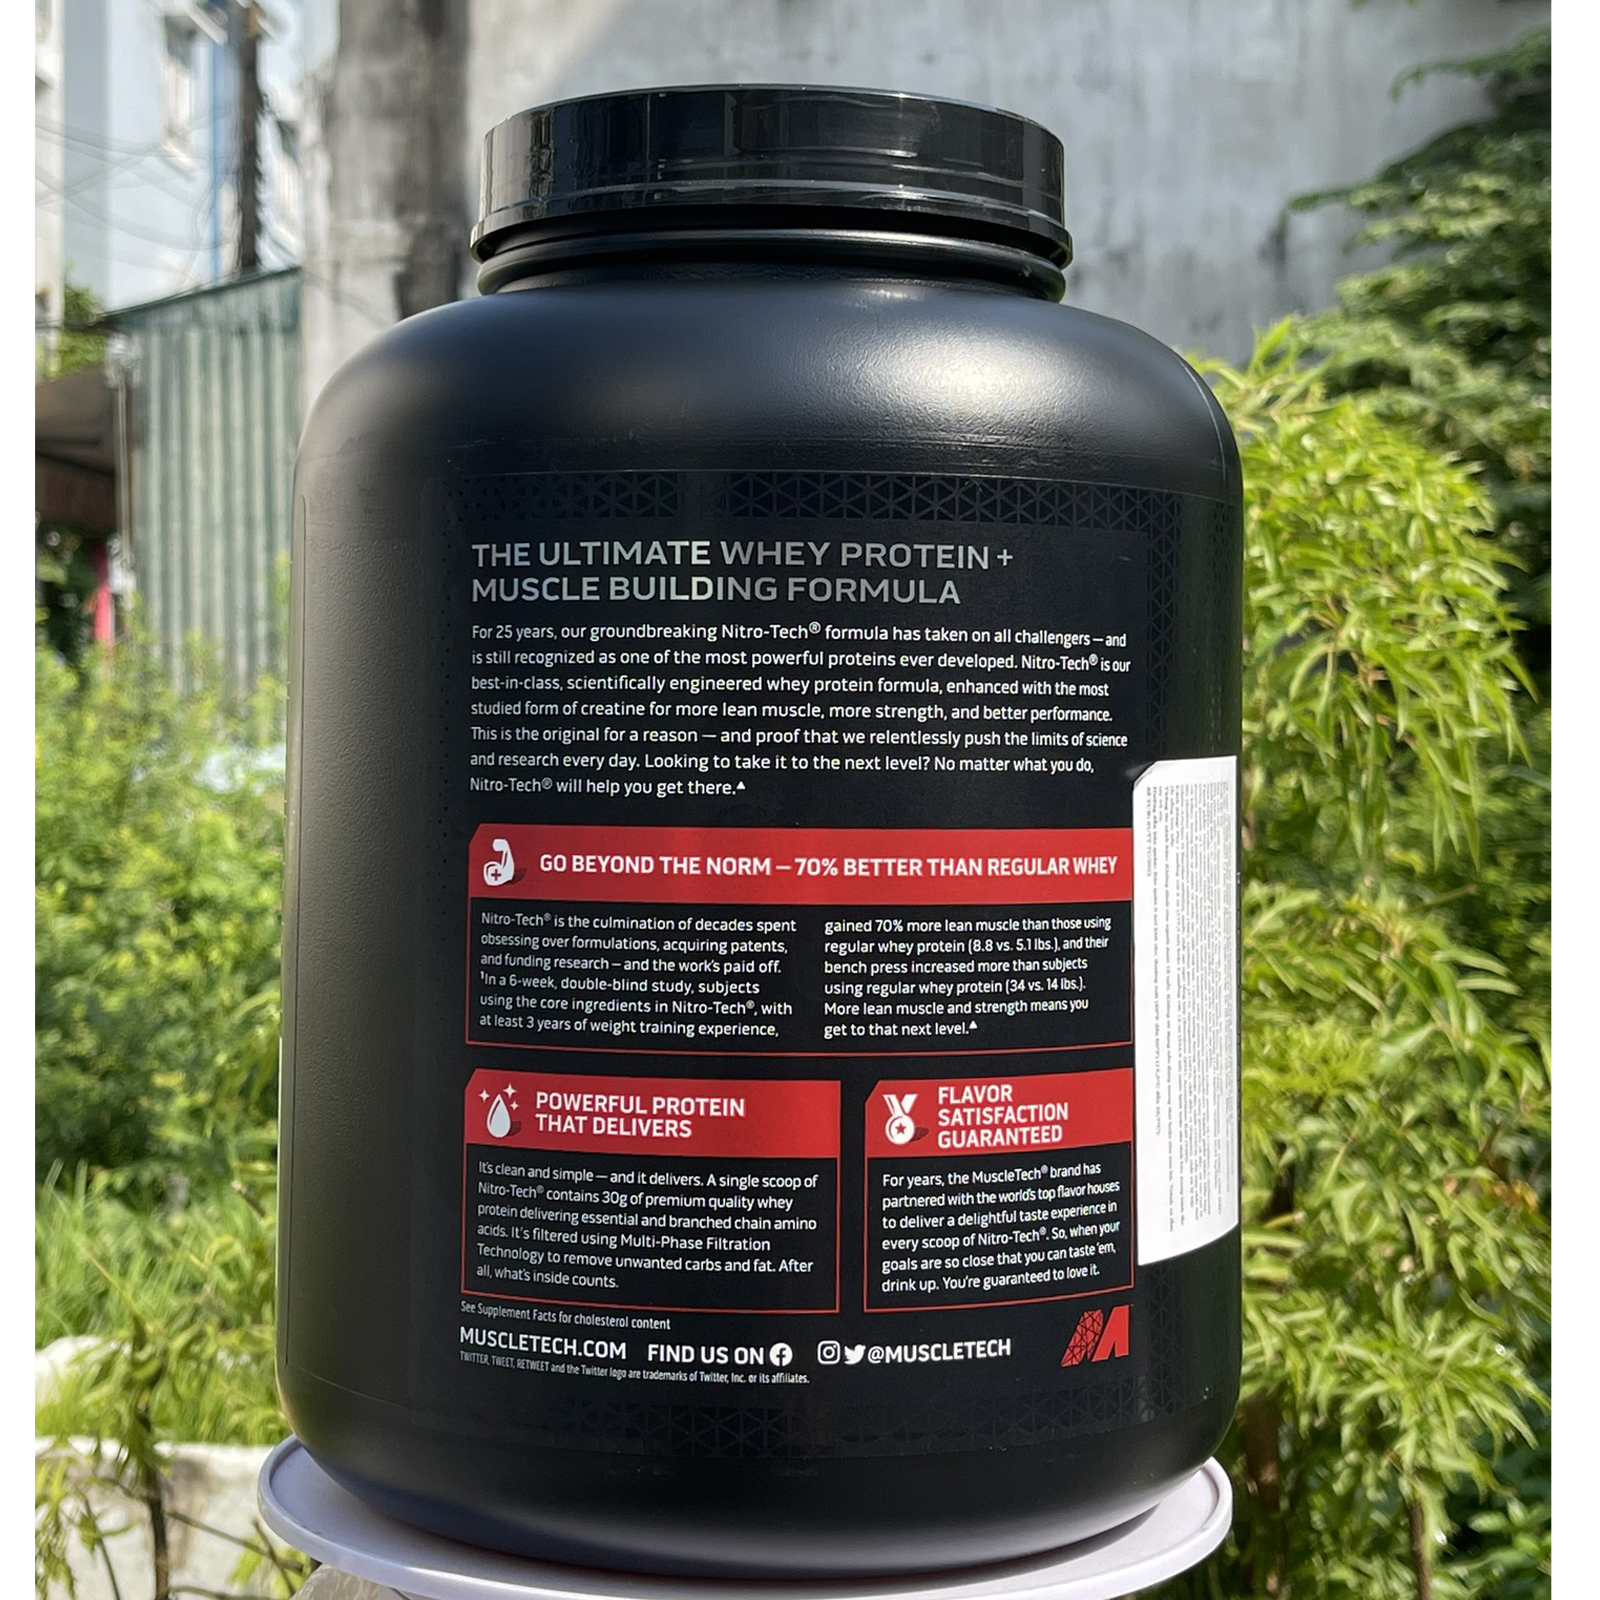 Combo Sữa tăng cơ cao cấp Whey Protein Nitro Tech của MuscleTech hộp 4 LBS hỗ trợ tăng cơ, giảm cân, đốt mỡ cho người tập GYM & Bình lắc 600 ml (Màu Ngẫu Nhiên)